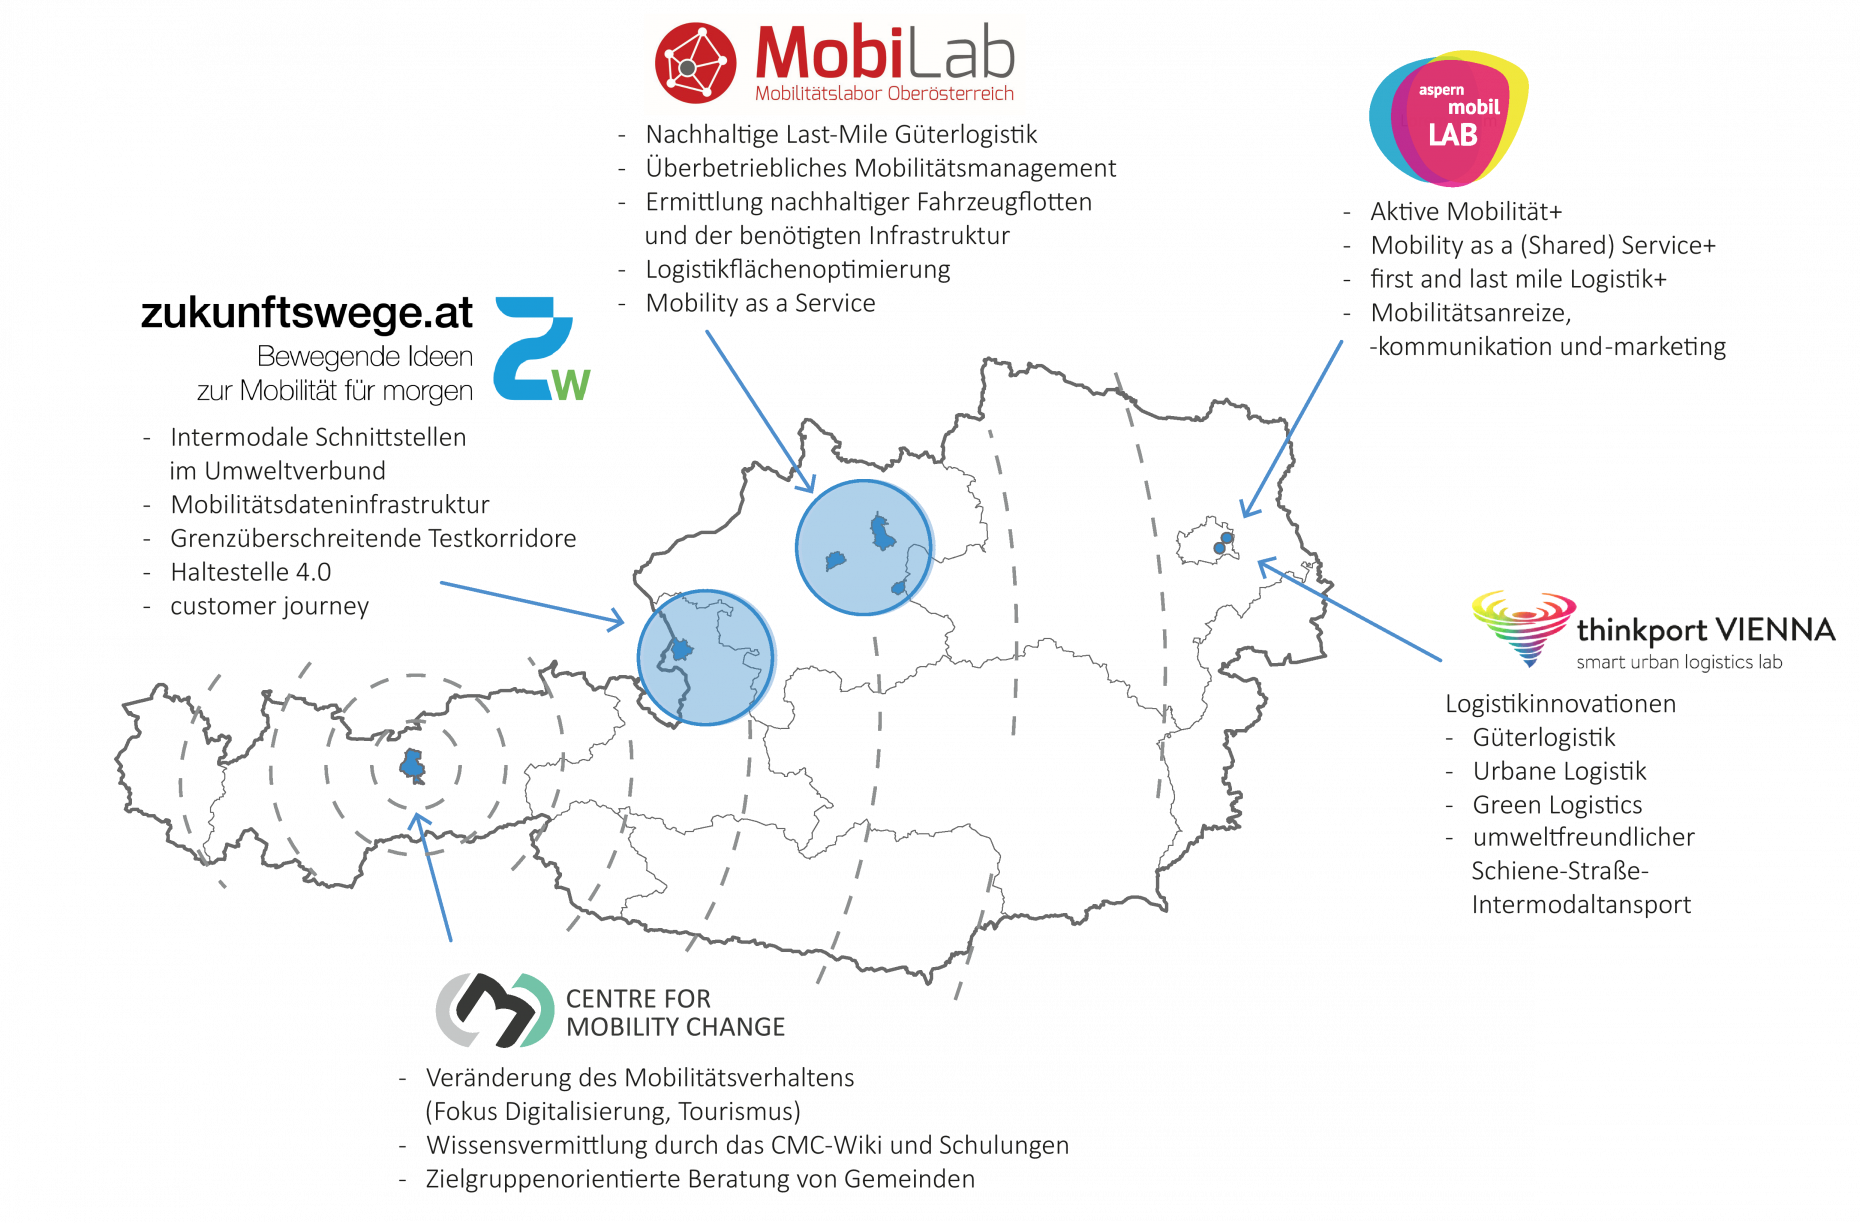 Das Bild zeigt eine Österreich Landkarte, in der die vier urbanen Mobilitätslabore und das Center for Mobility Change verortet sind. Außerdem werden die Themenschwerpunkte der einzelnen Mobilitätslabore dargestellt.